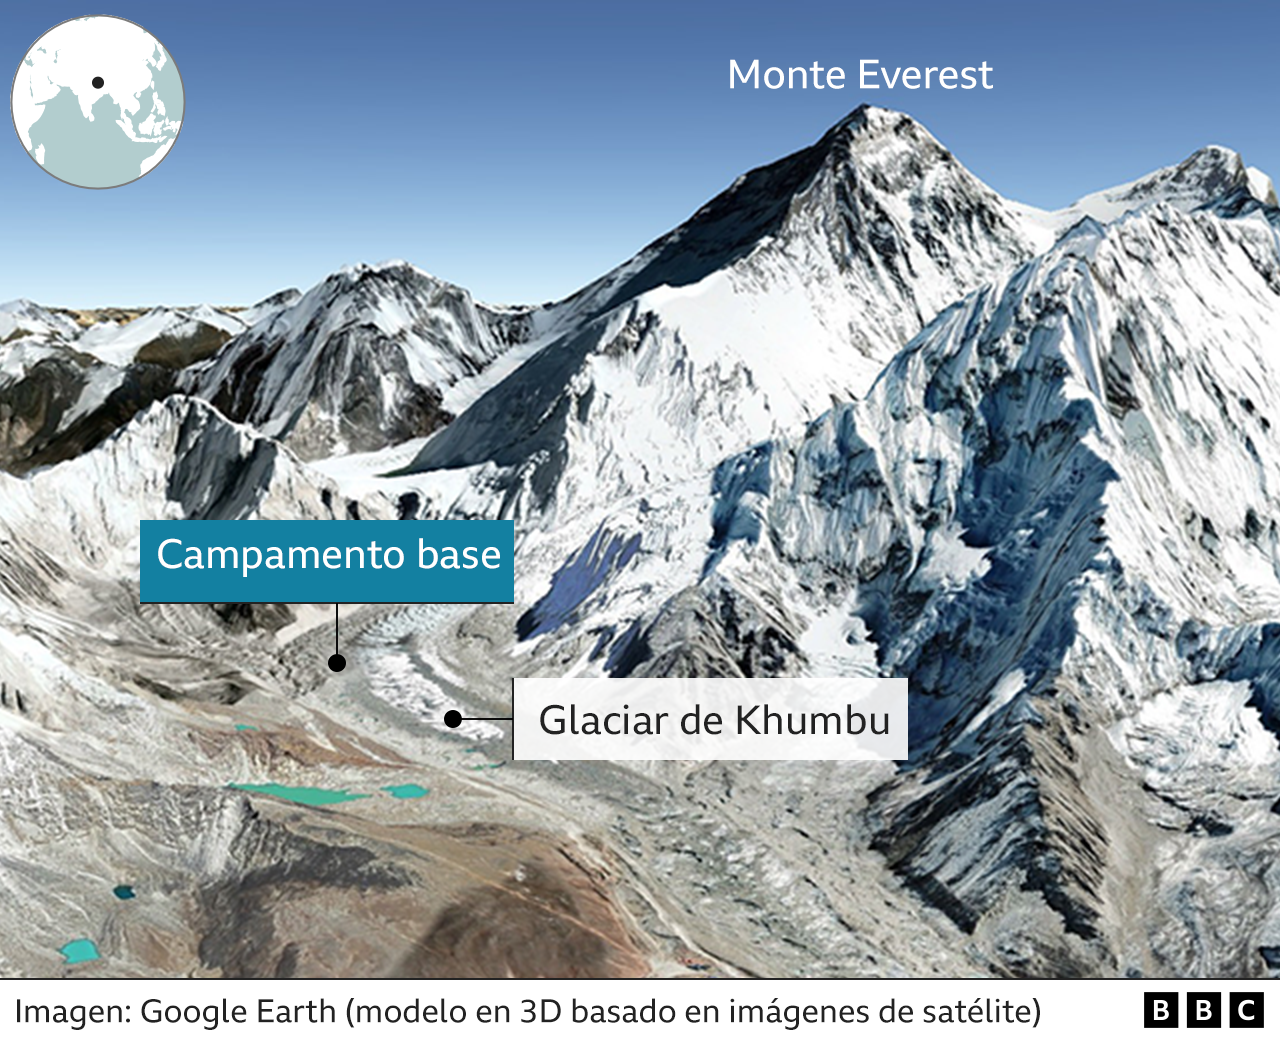 Imagen en 3D de Google Earth de la posición del campamento base y el glaciar de Khumbu